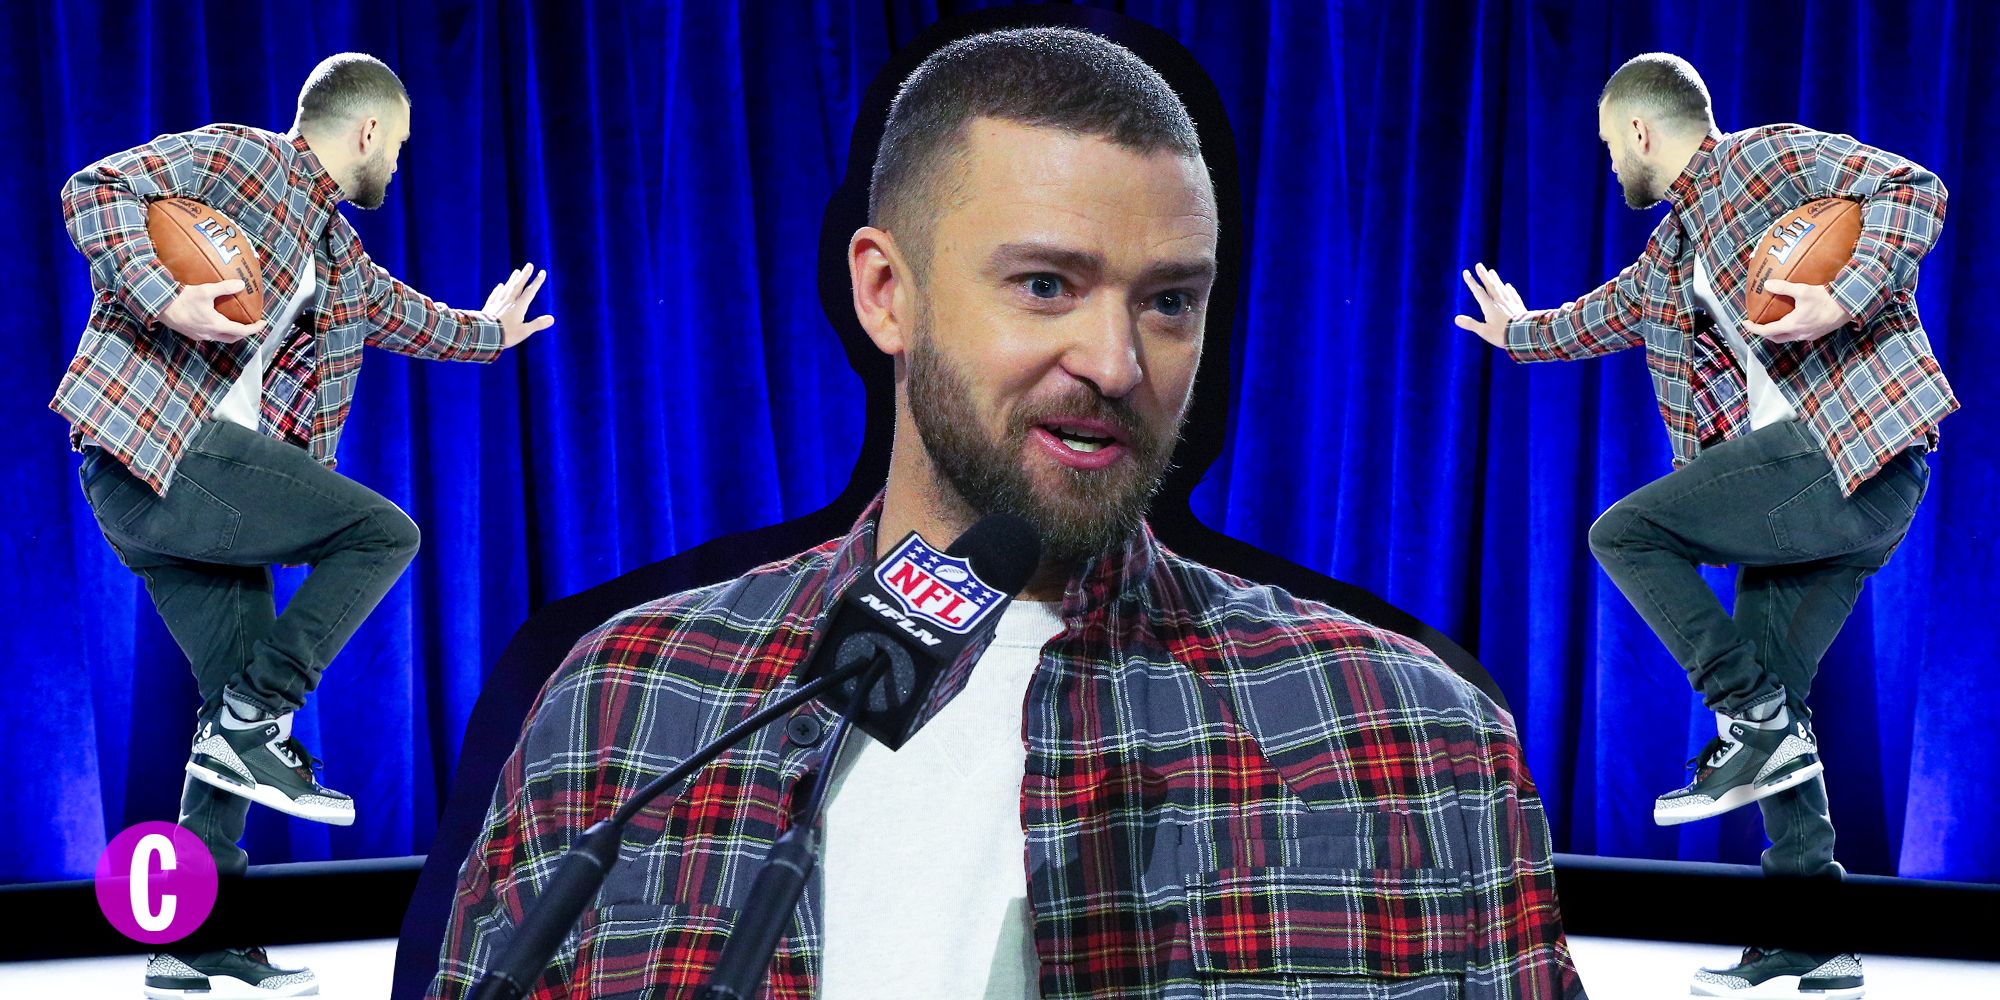 Justin Timberlake prende ispirazione dal suo ultimo disco, Man of the Woods, per lo stile dell'outfit che indosserà durante il suo attesissimo show del half time del Super Bowl 2018: Stella McCartney ha disegnato per lui un look mountain chic.